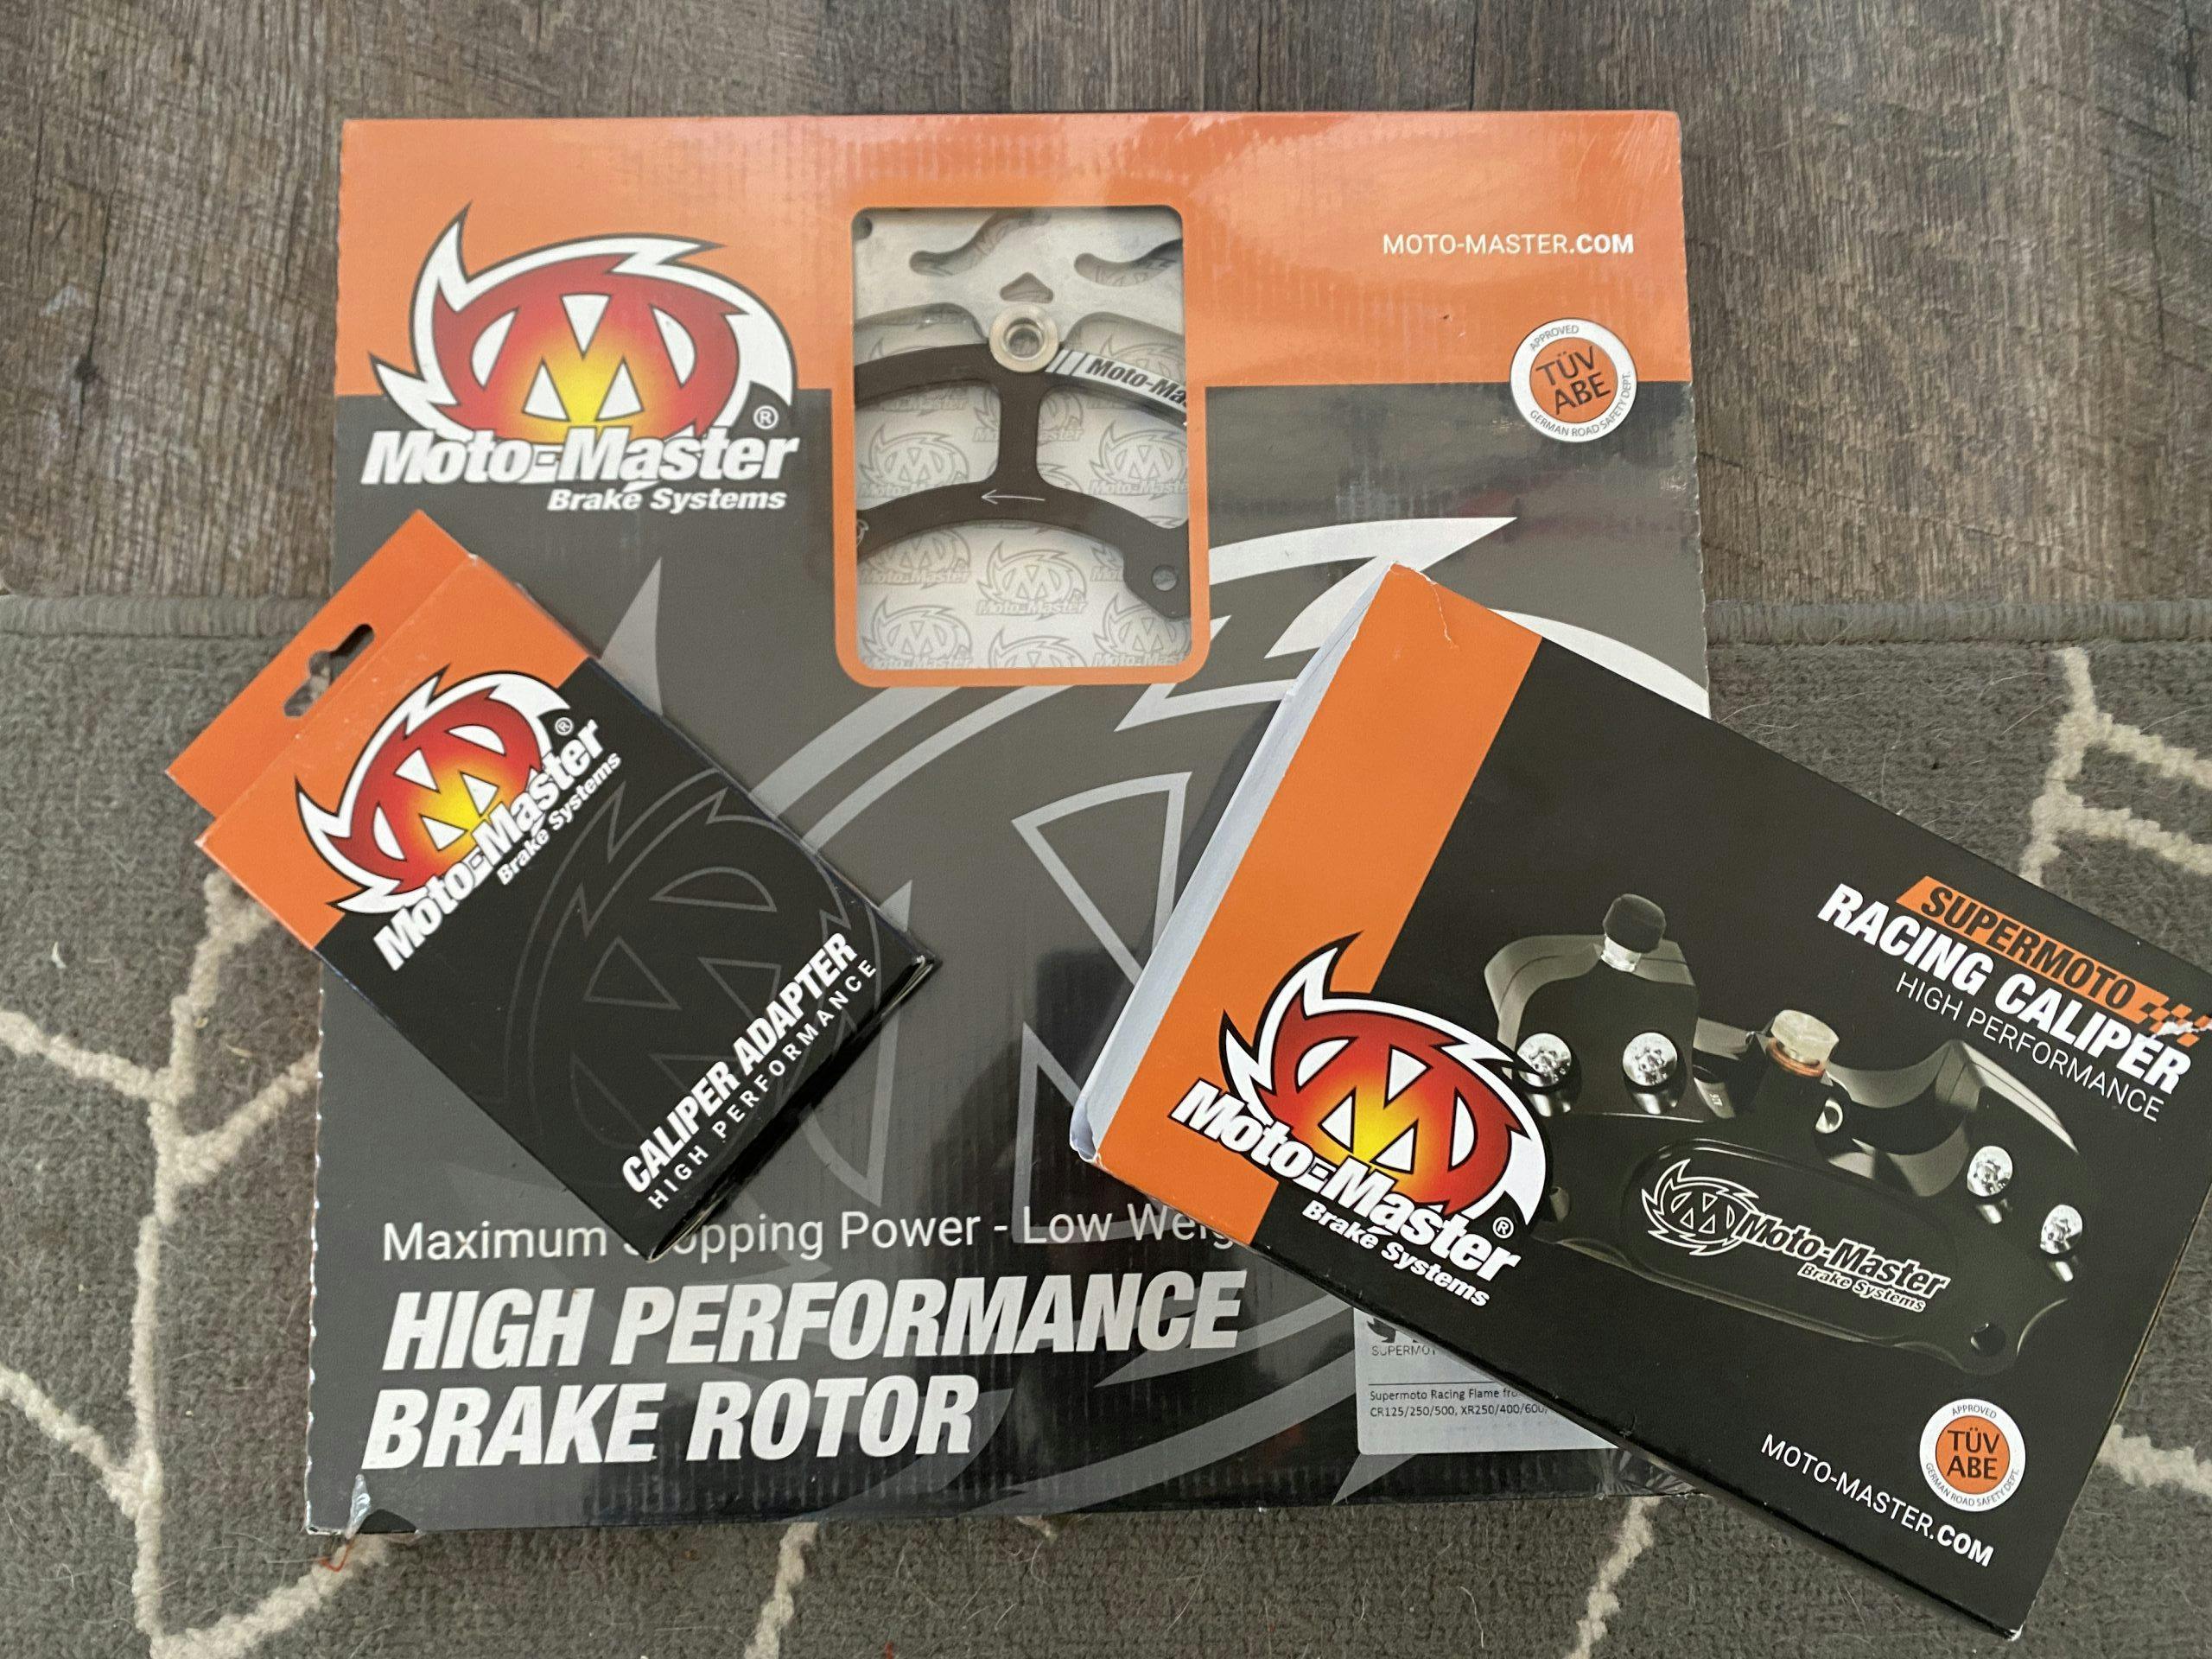 Moto Master front brake setup